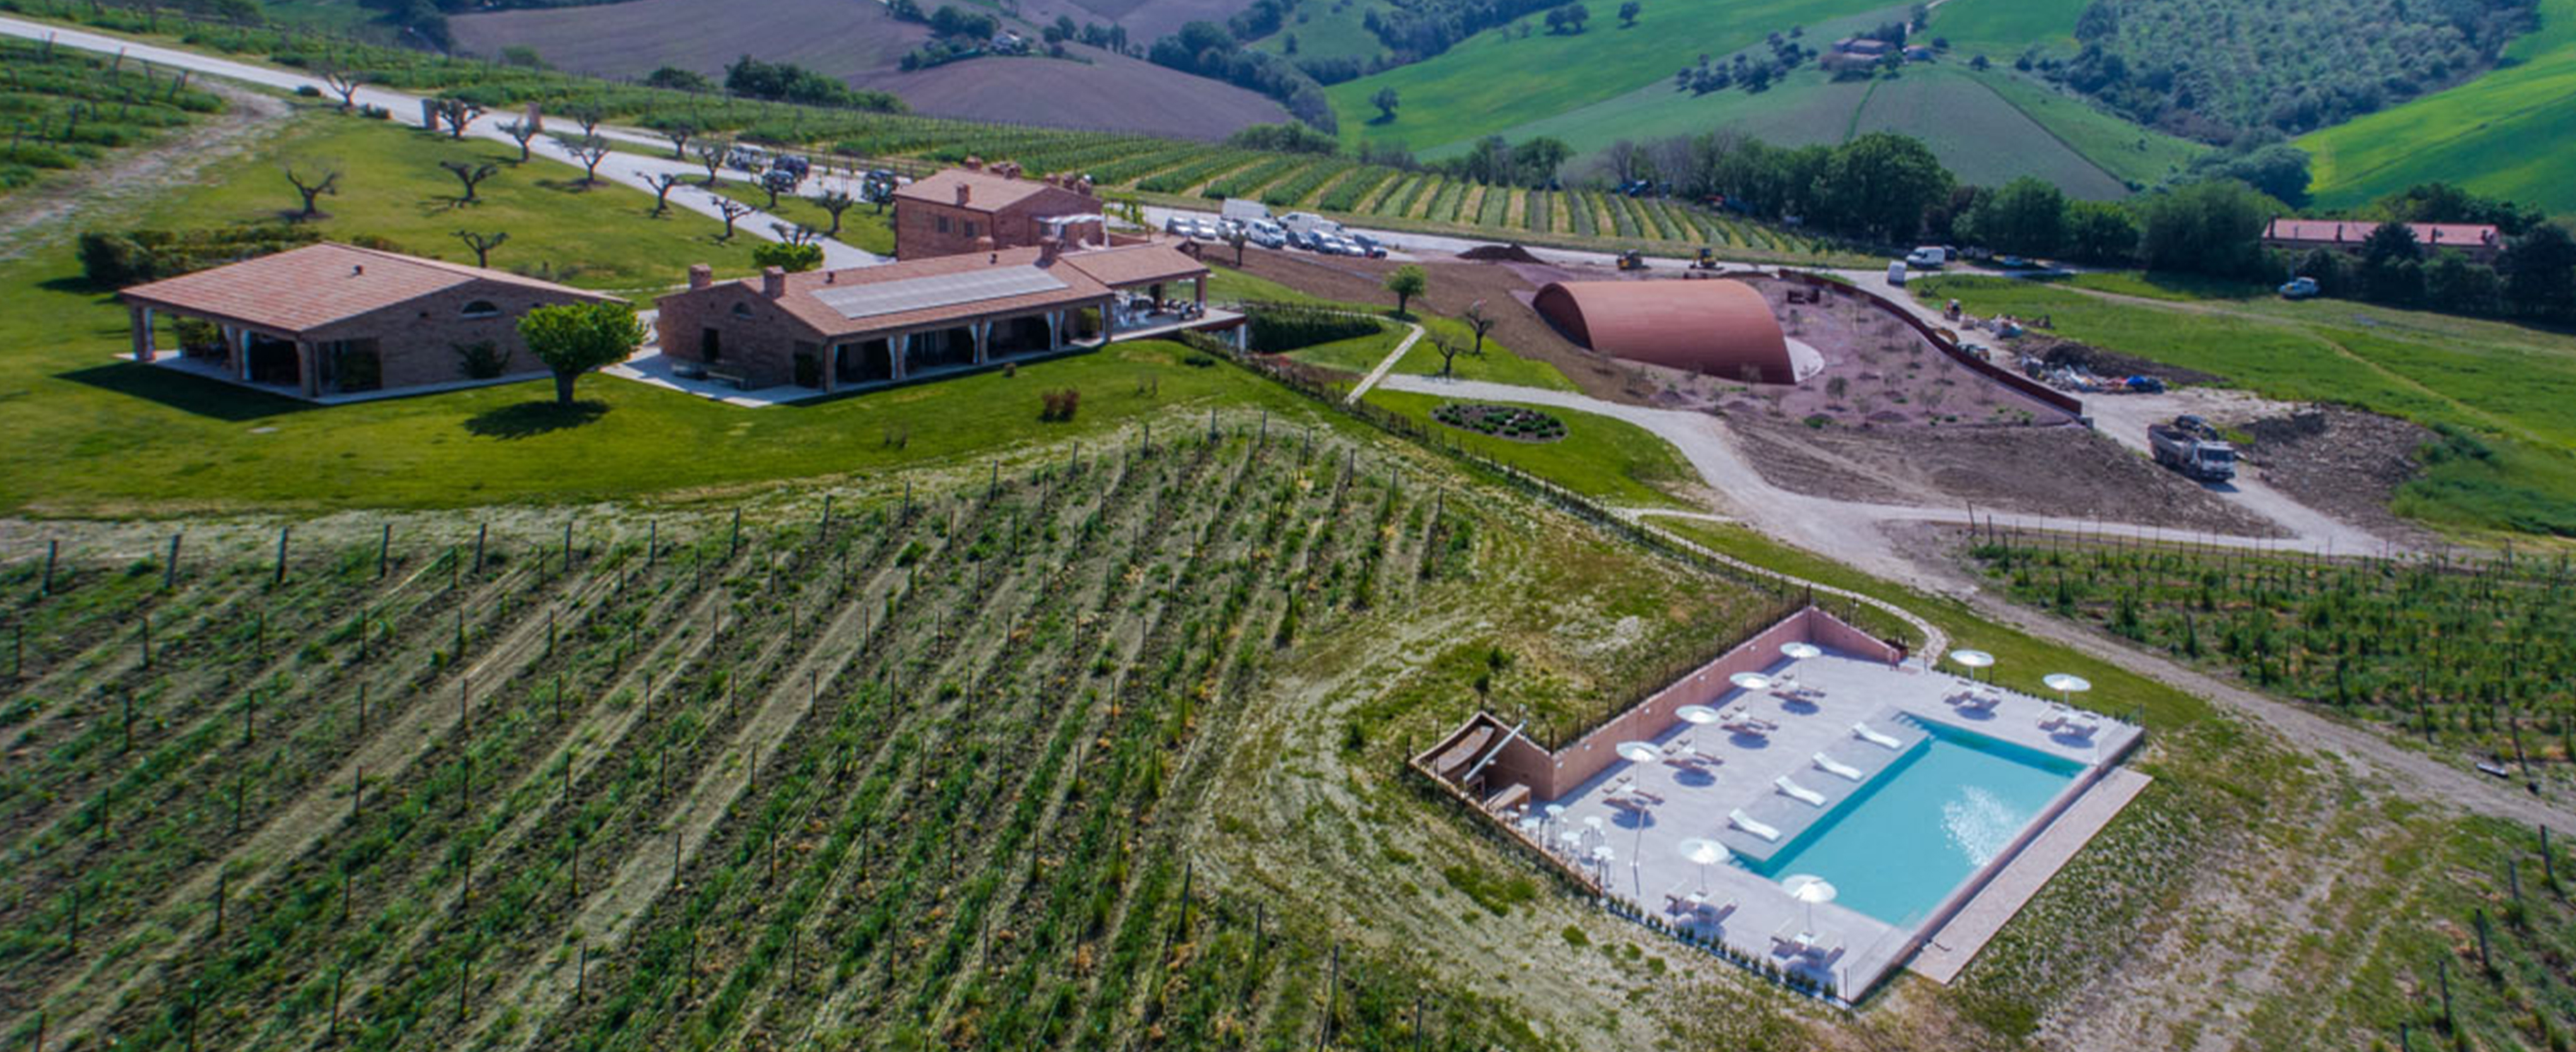 Filodivino Wine Resort & Spa, San Marcello, Italy